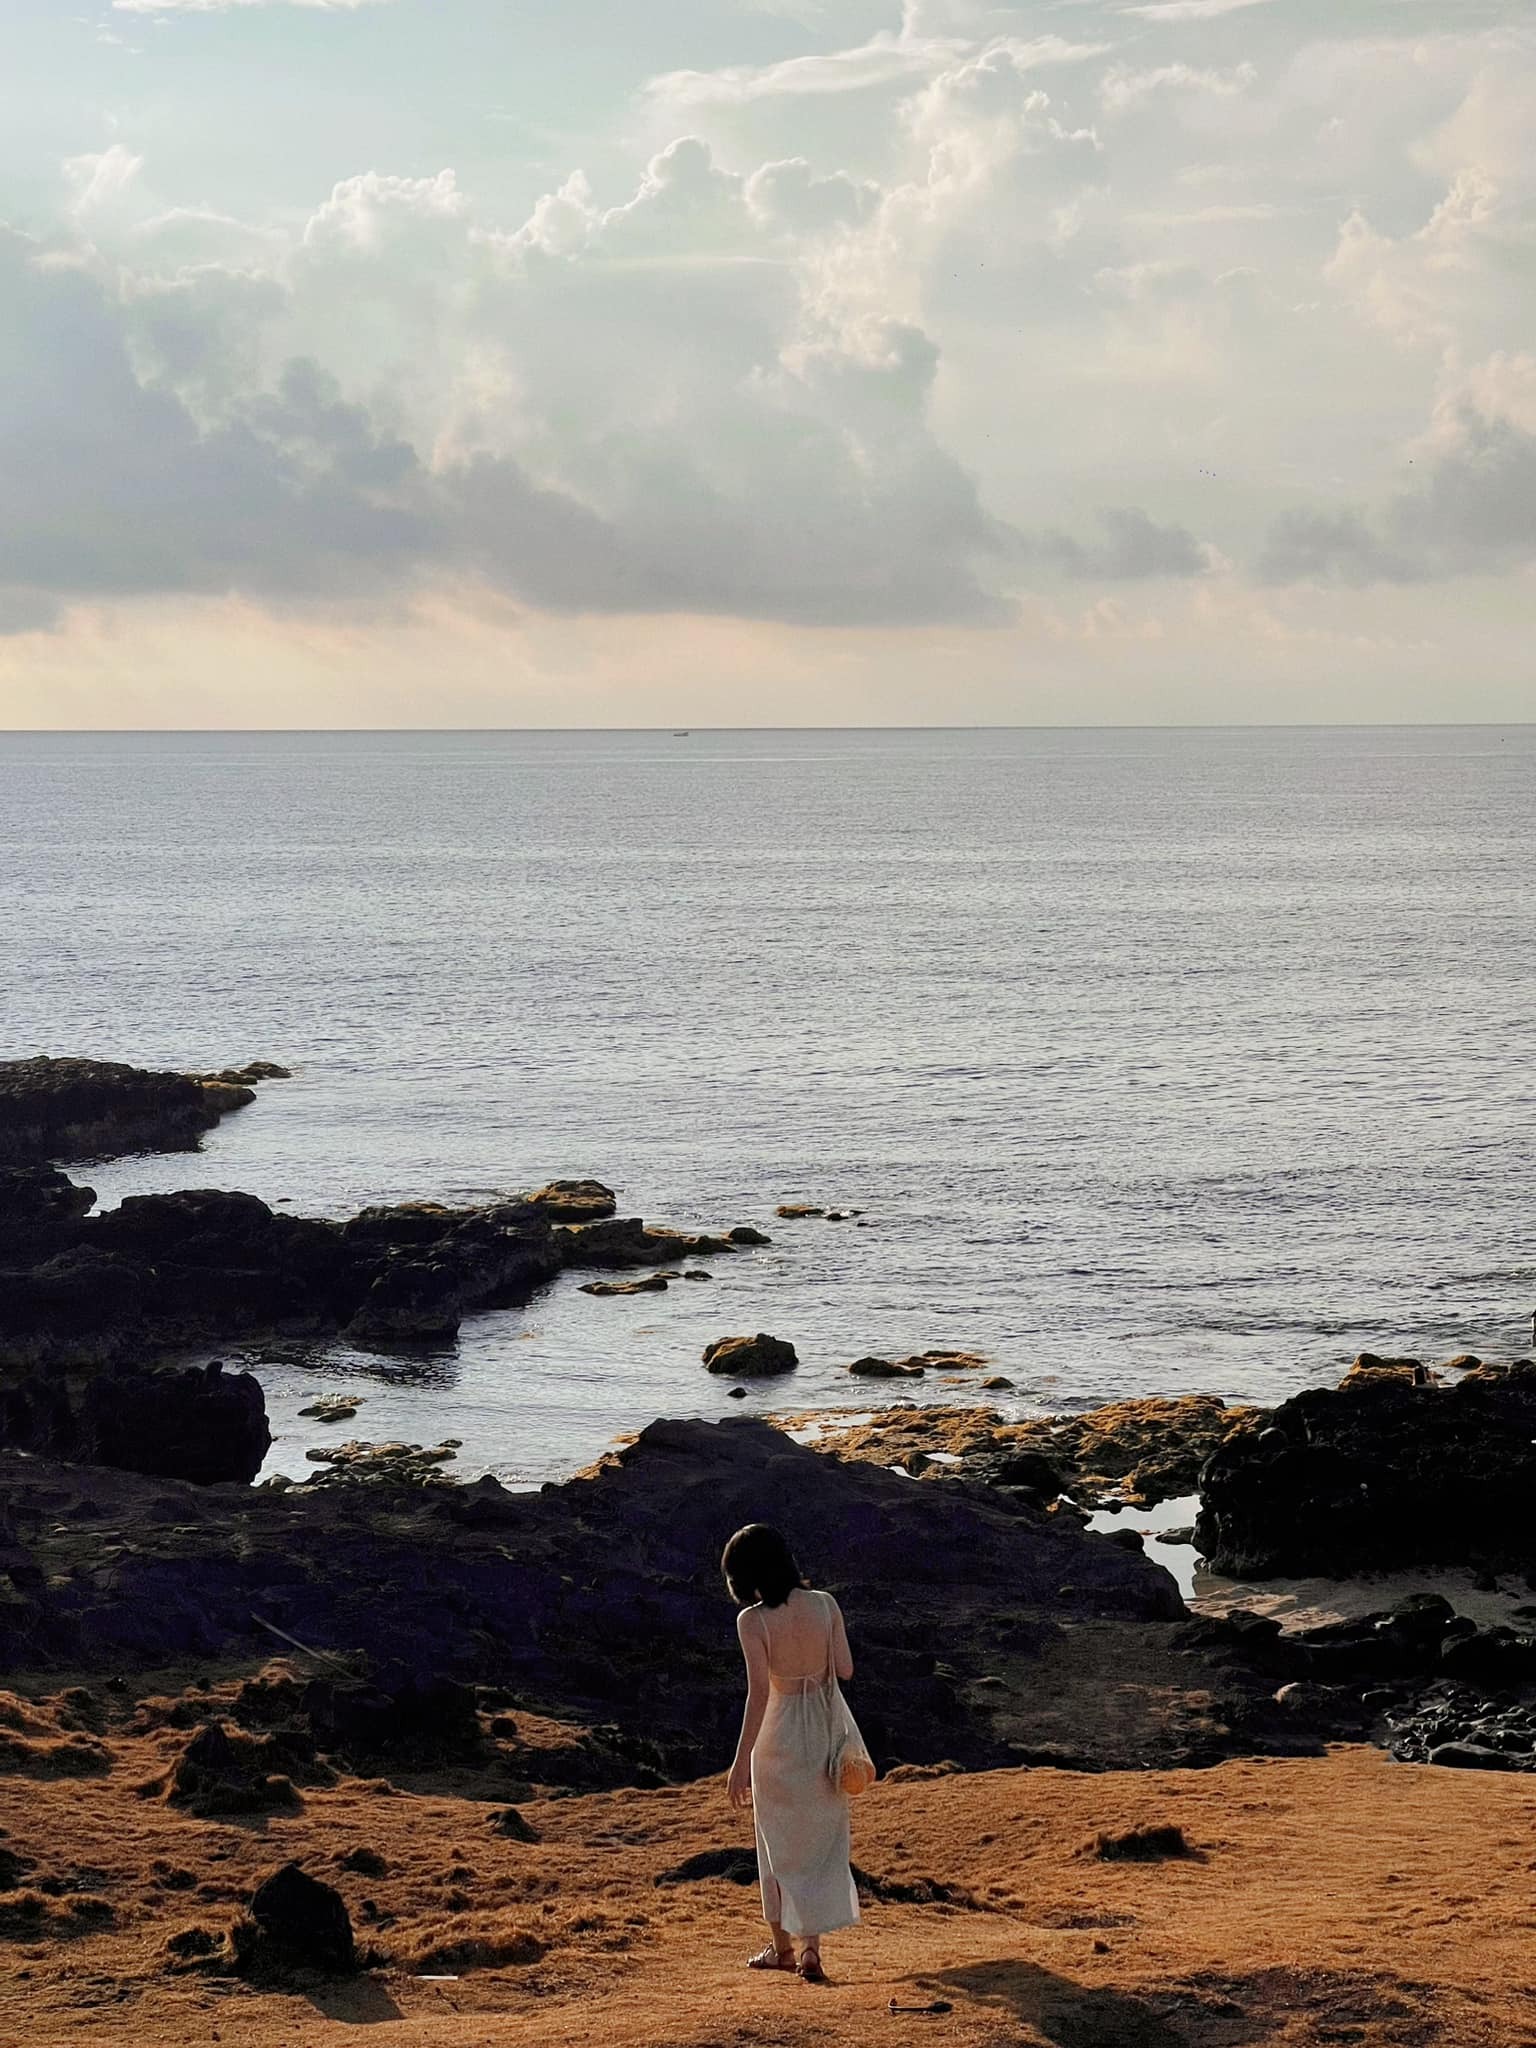 Đến đảo Phú Quý mùa đẹp nhất - 3